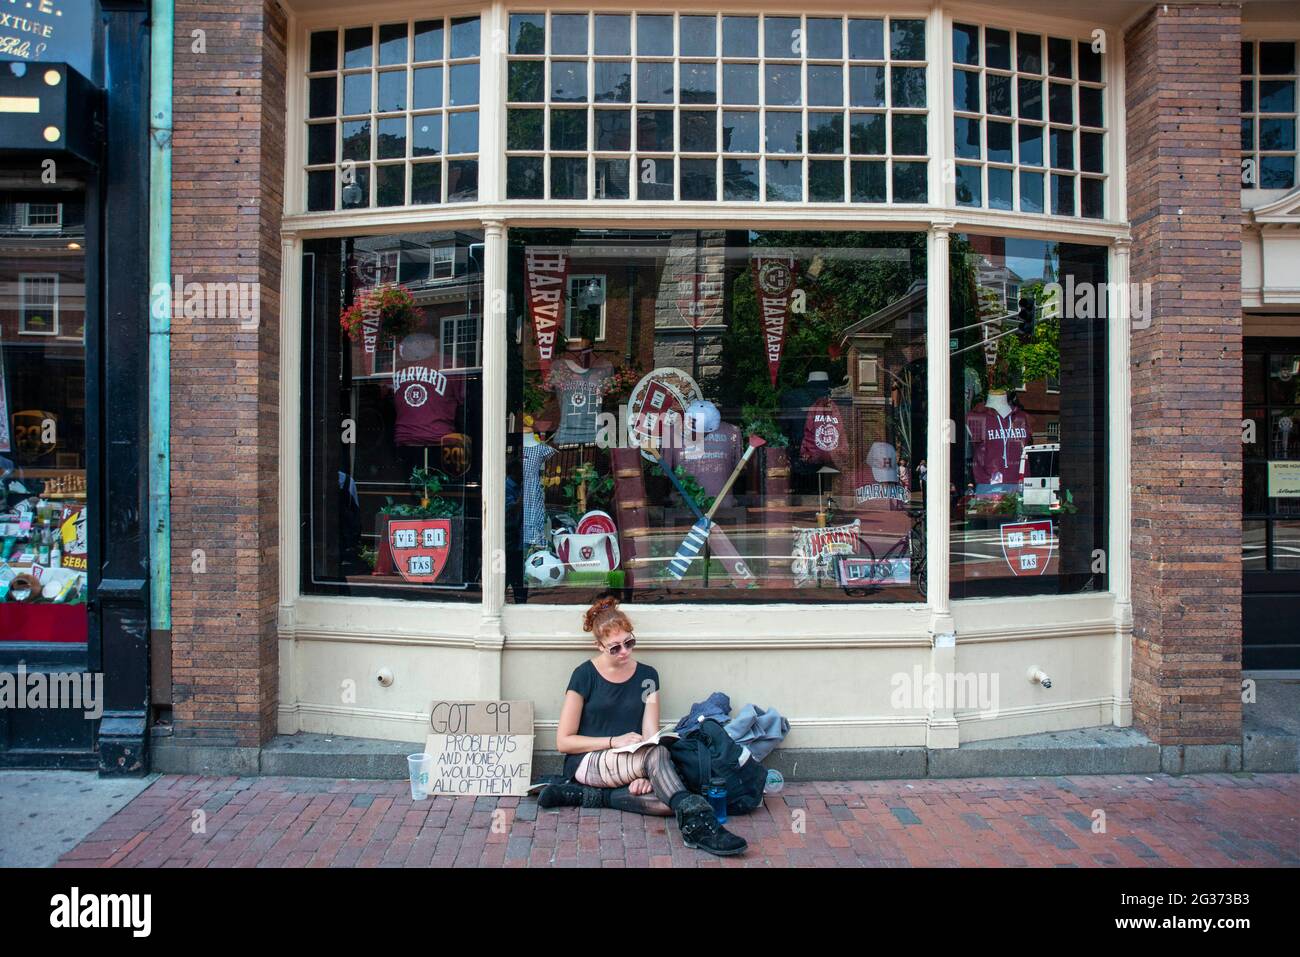 Giovane ragazza senza casa all'Università di Harvard T-shirt libri e negozio di souvenir nel centro della città Massachusetts Avenue, Cambridge, Massachusetts, Stati Uniti Foto Stock